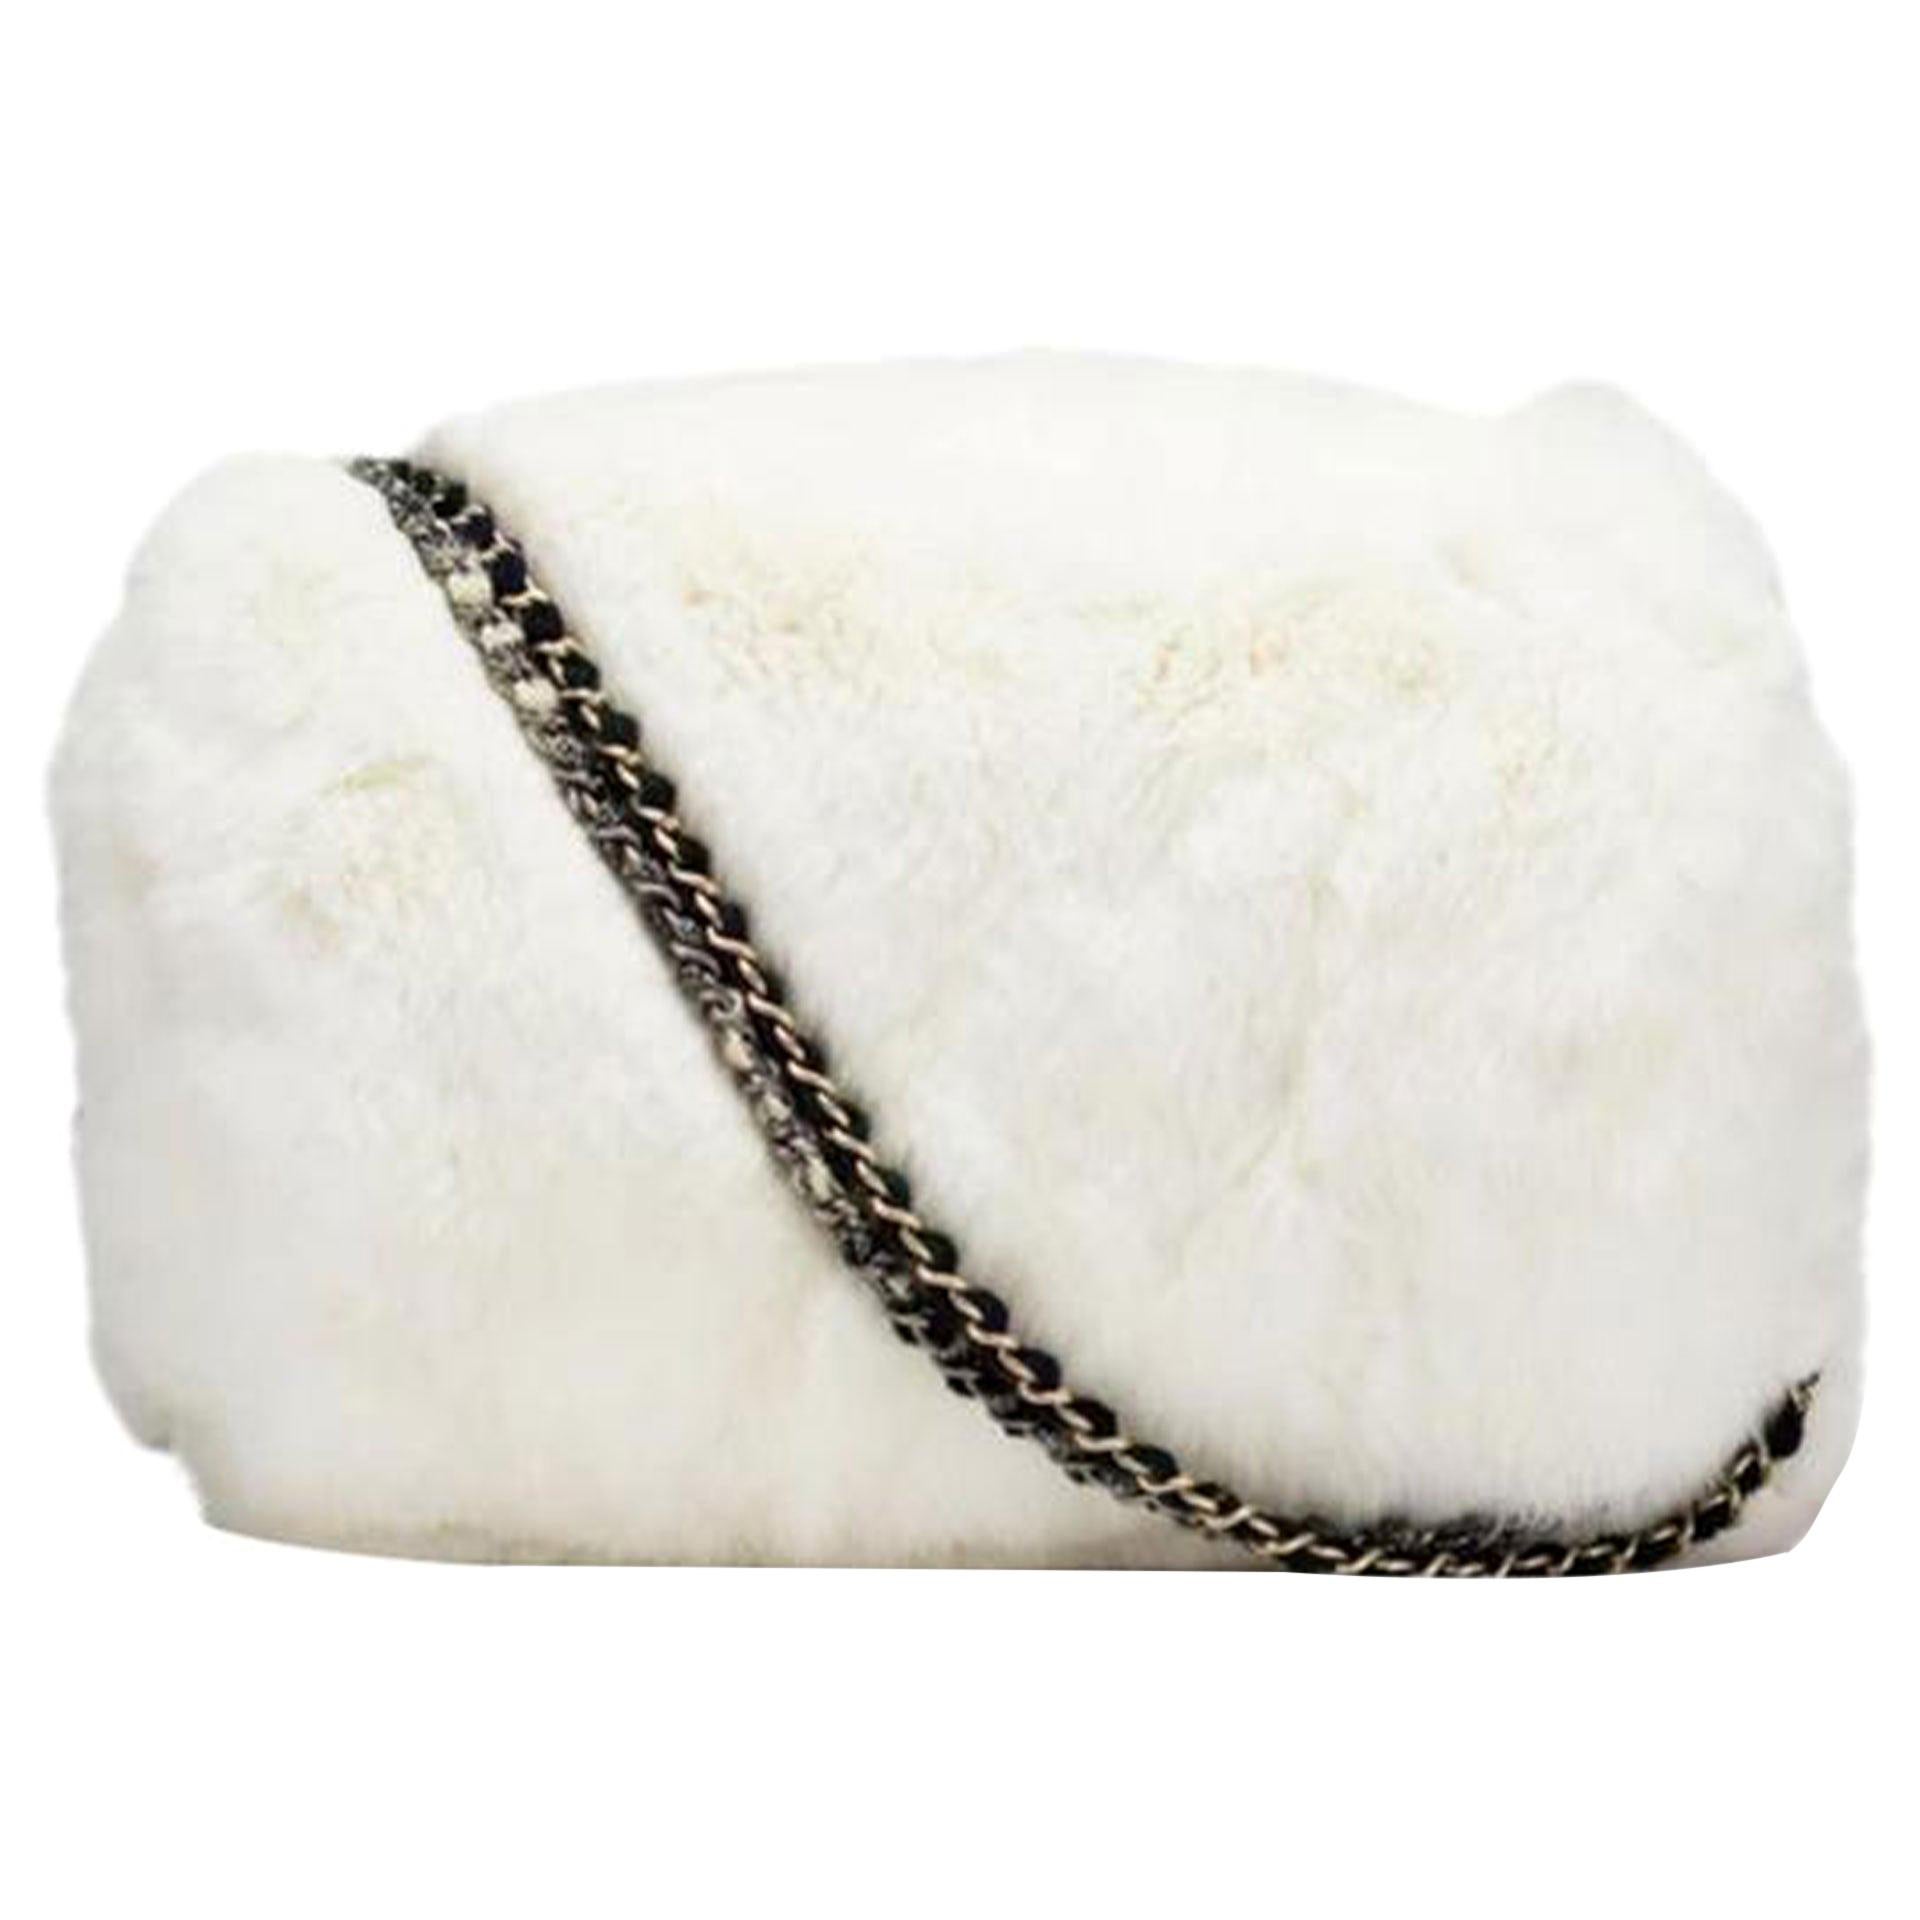 Chanel Kette Vintage Muff Schwarz und Weiß Grau Tweed Pelz Eidechse Cross Body Bag